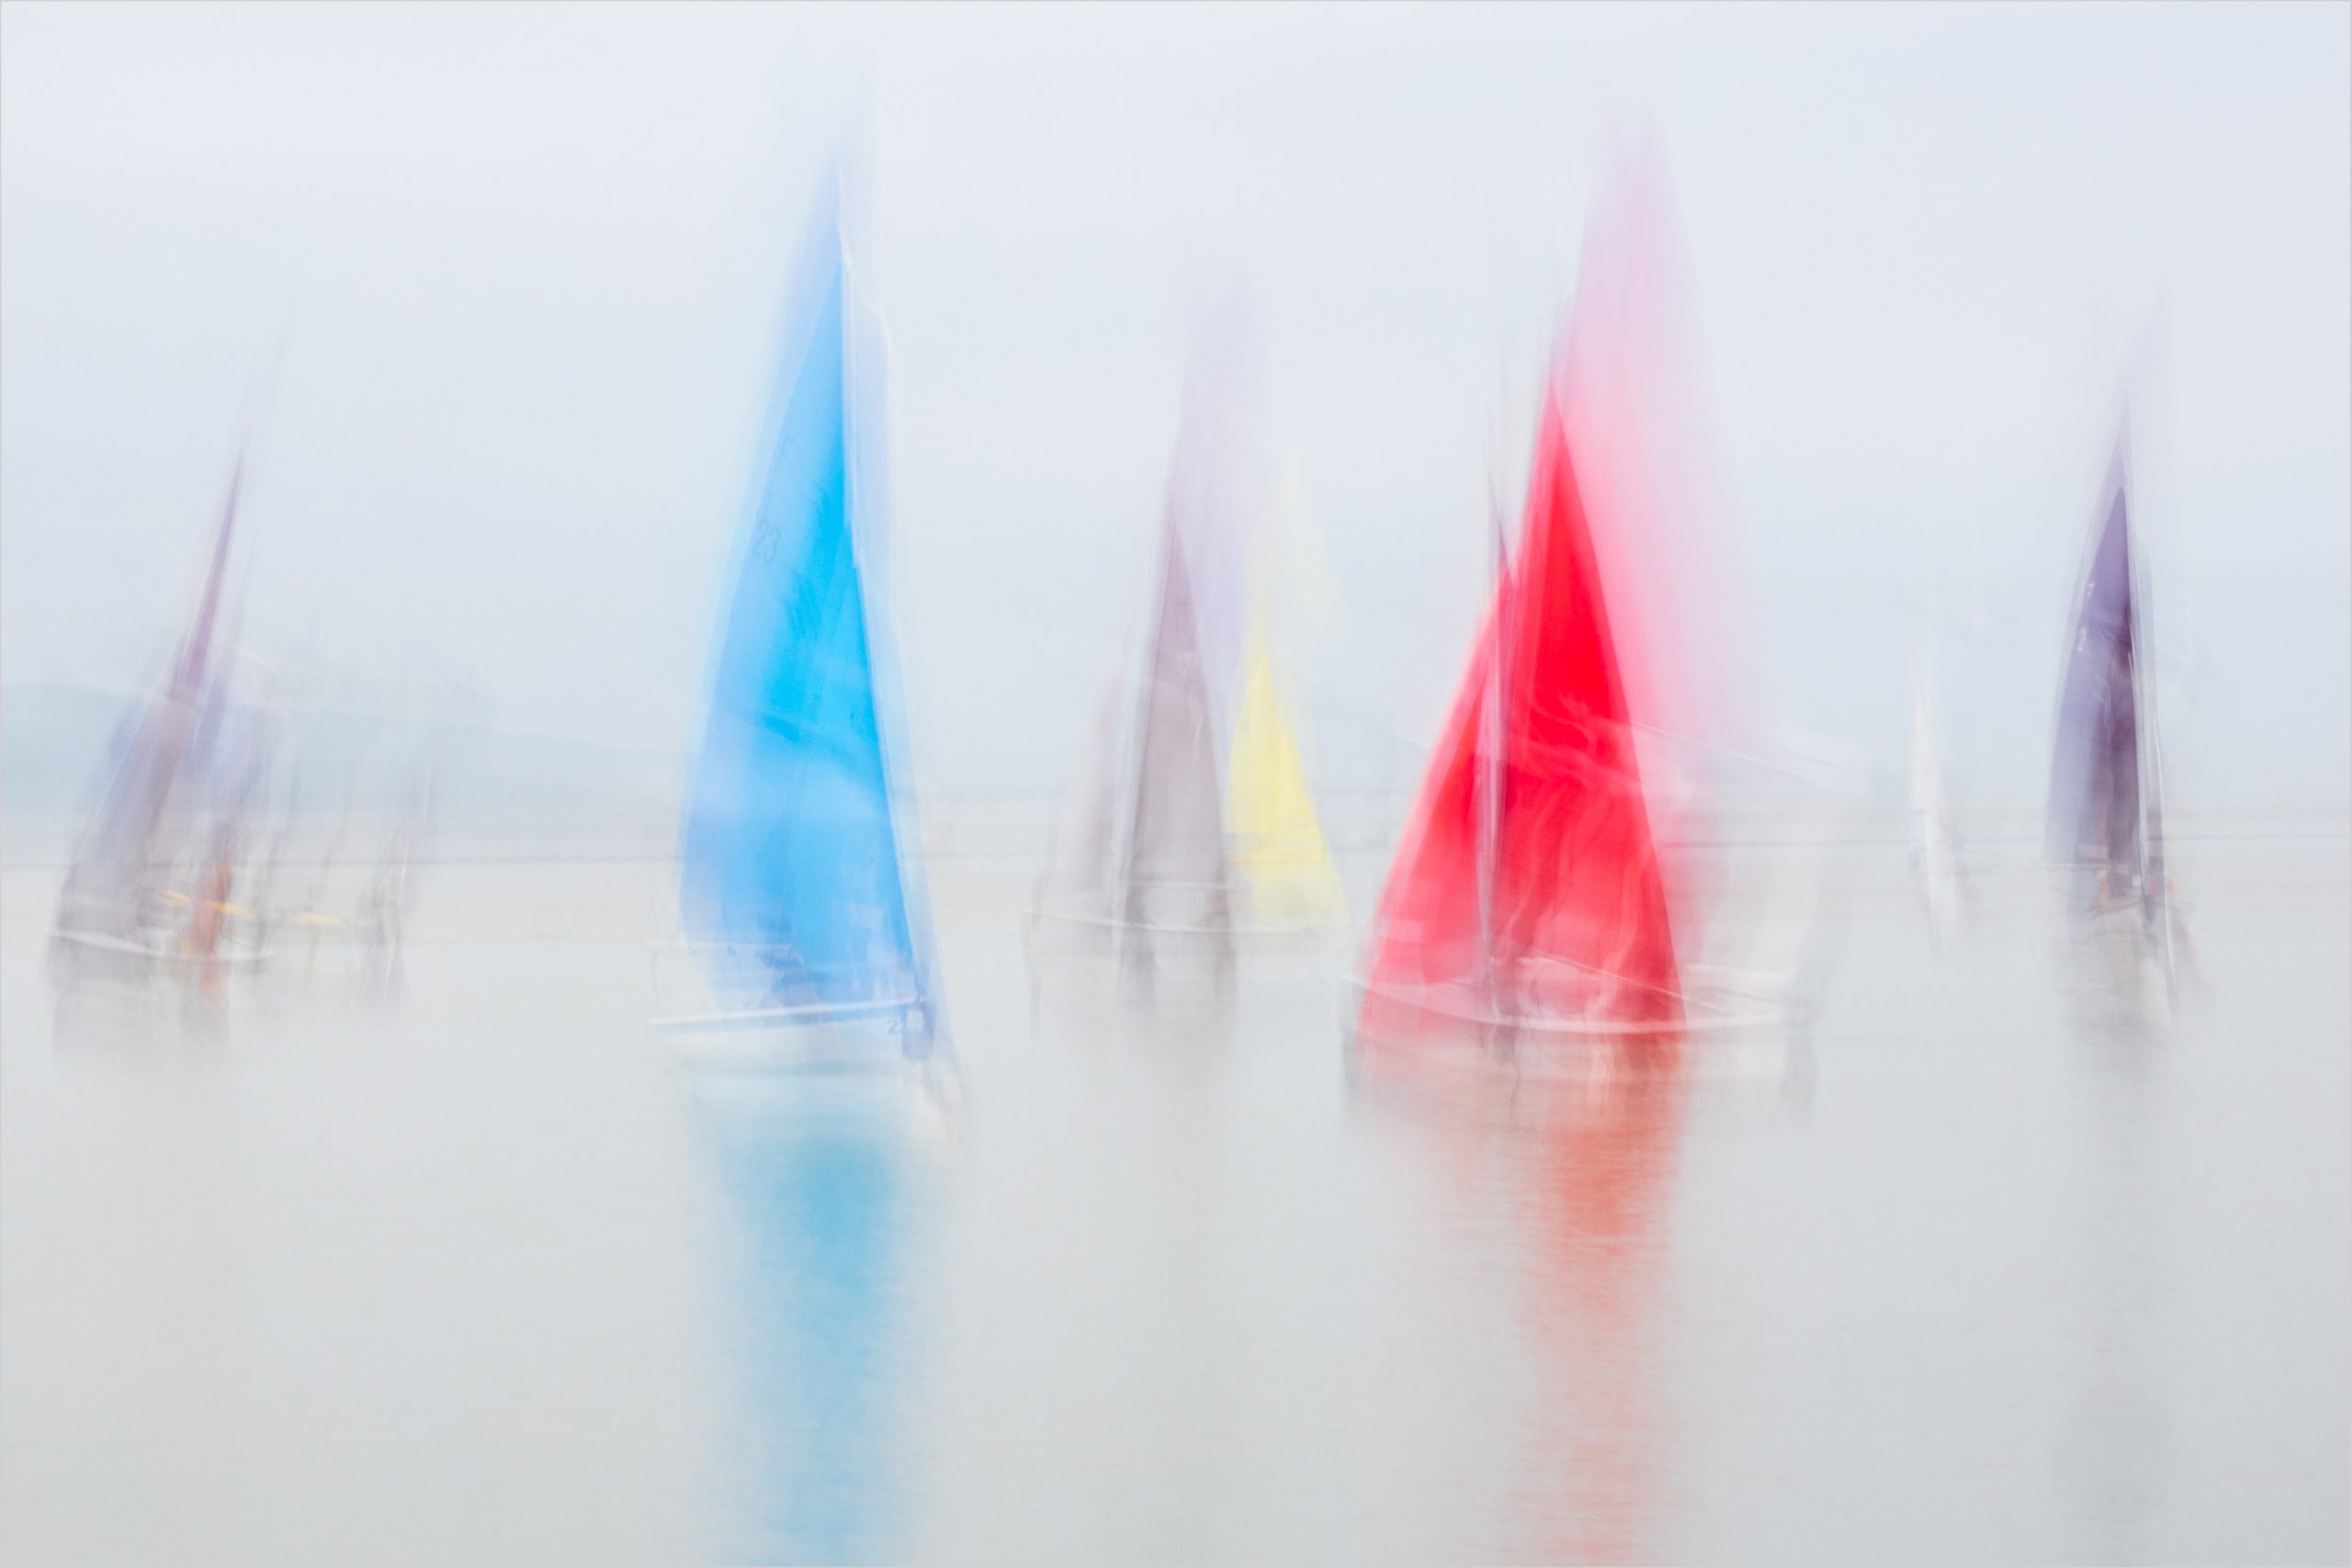 Plain Sailing – ICM → Paul Cayton Photography